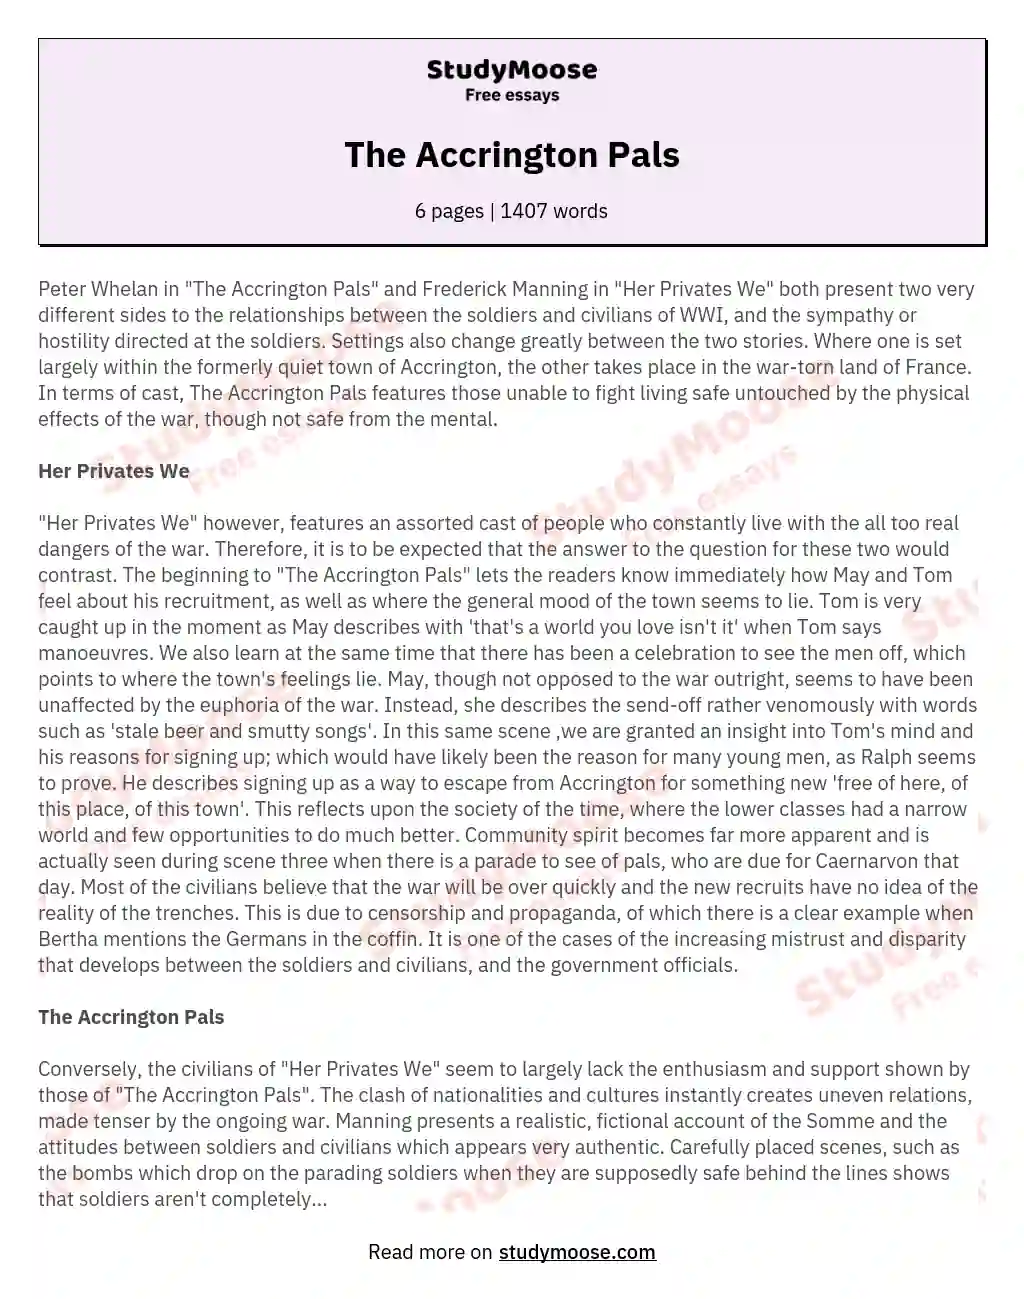 The Accrington Pals essay